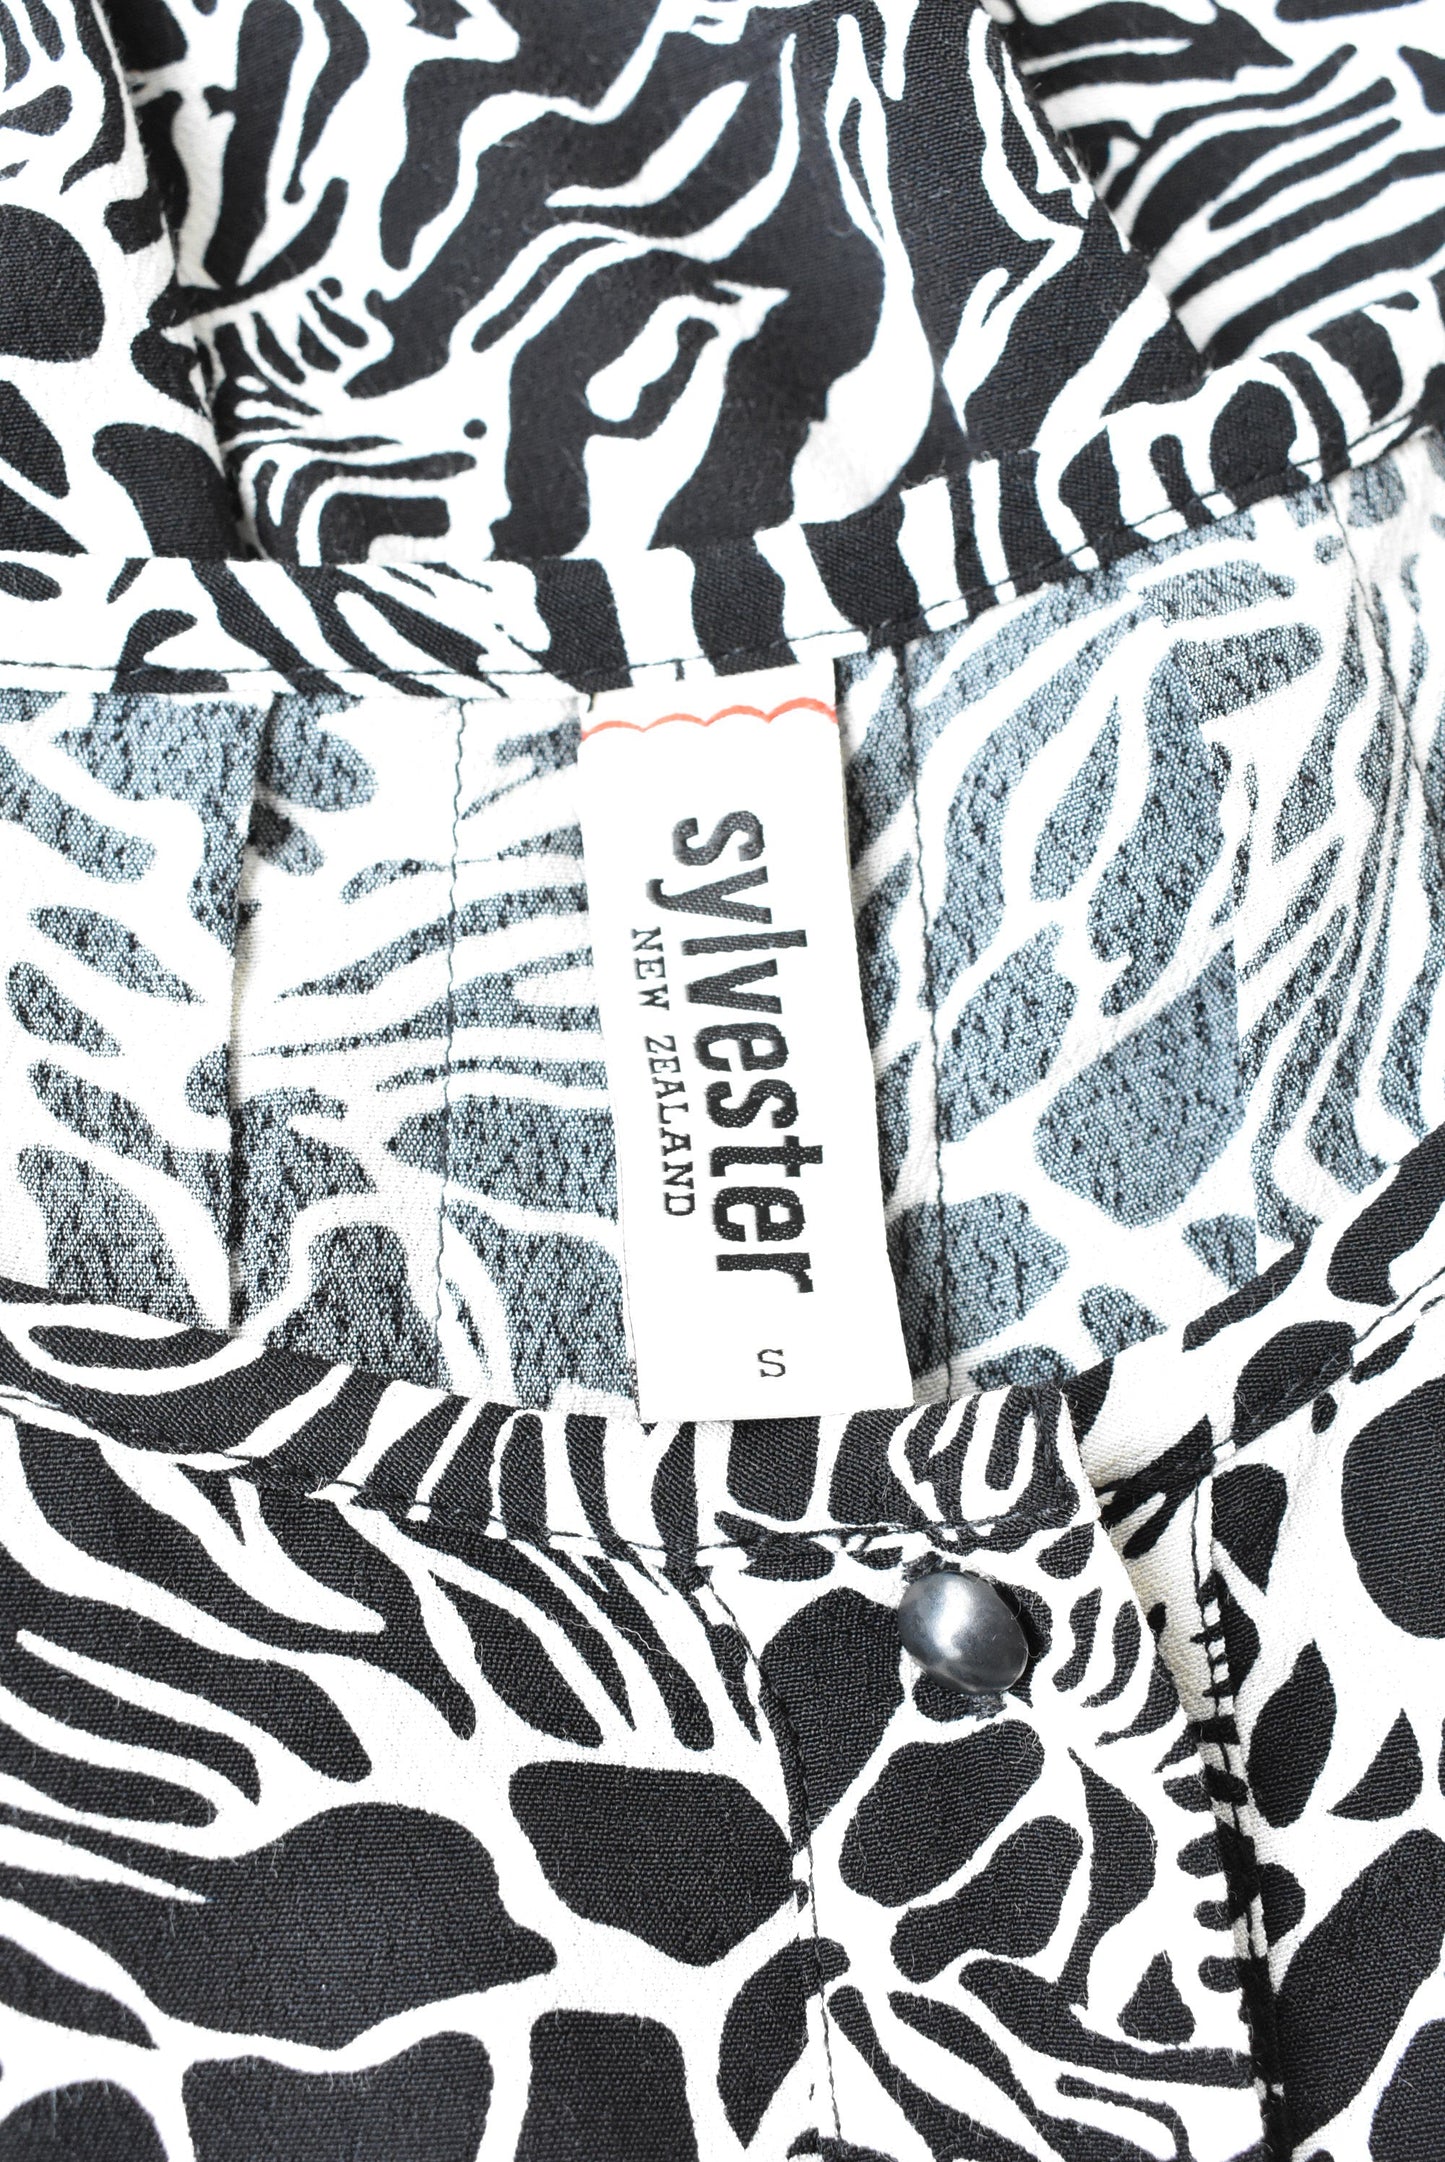 Sylvester zebra print top, size S